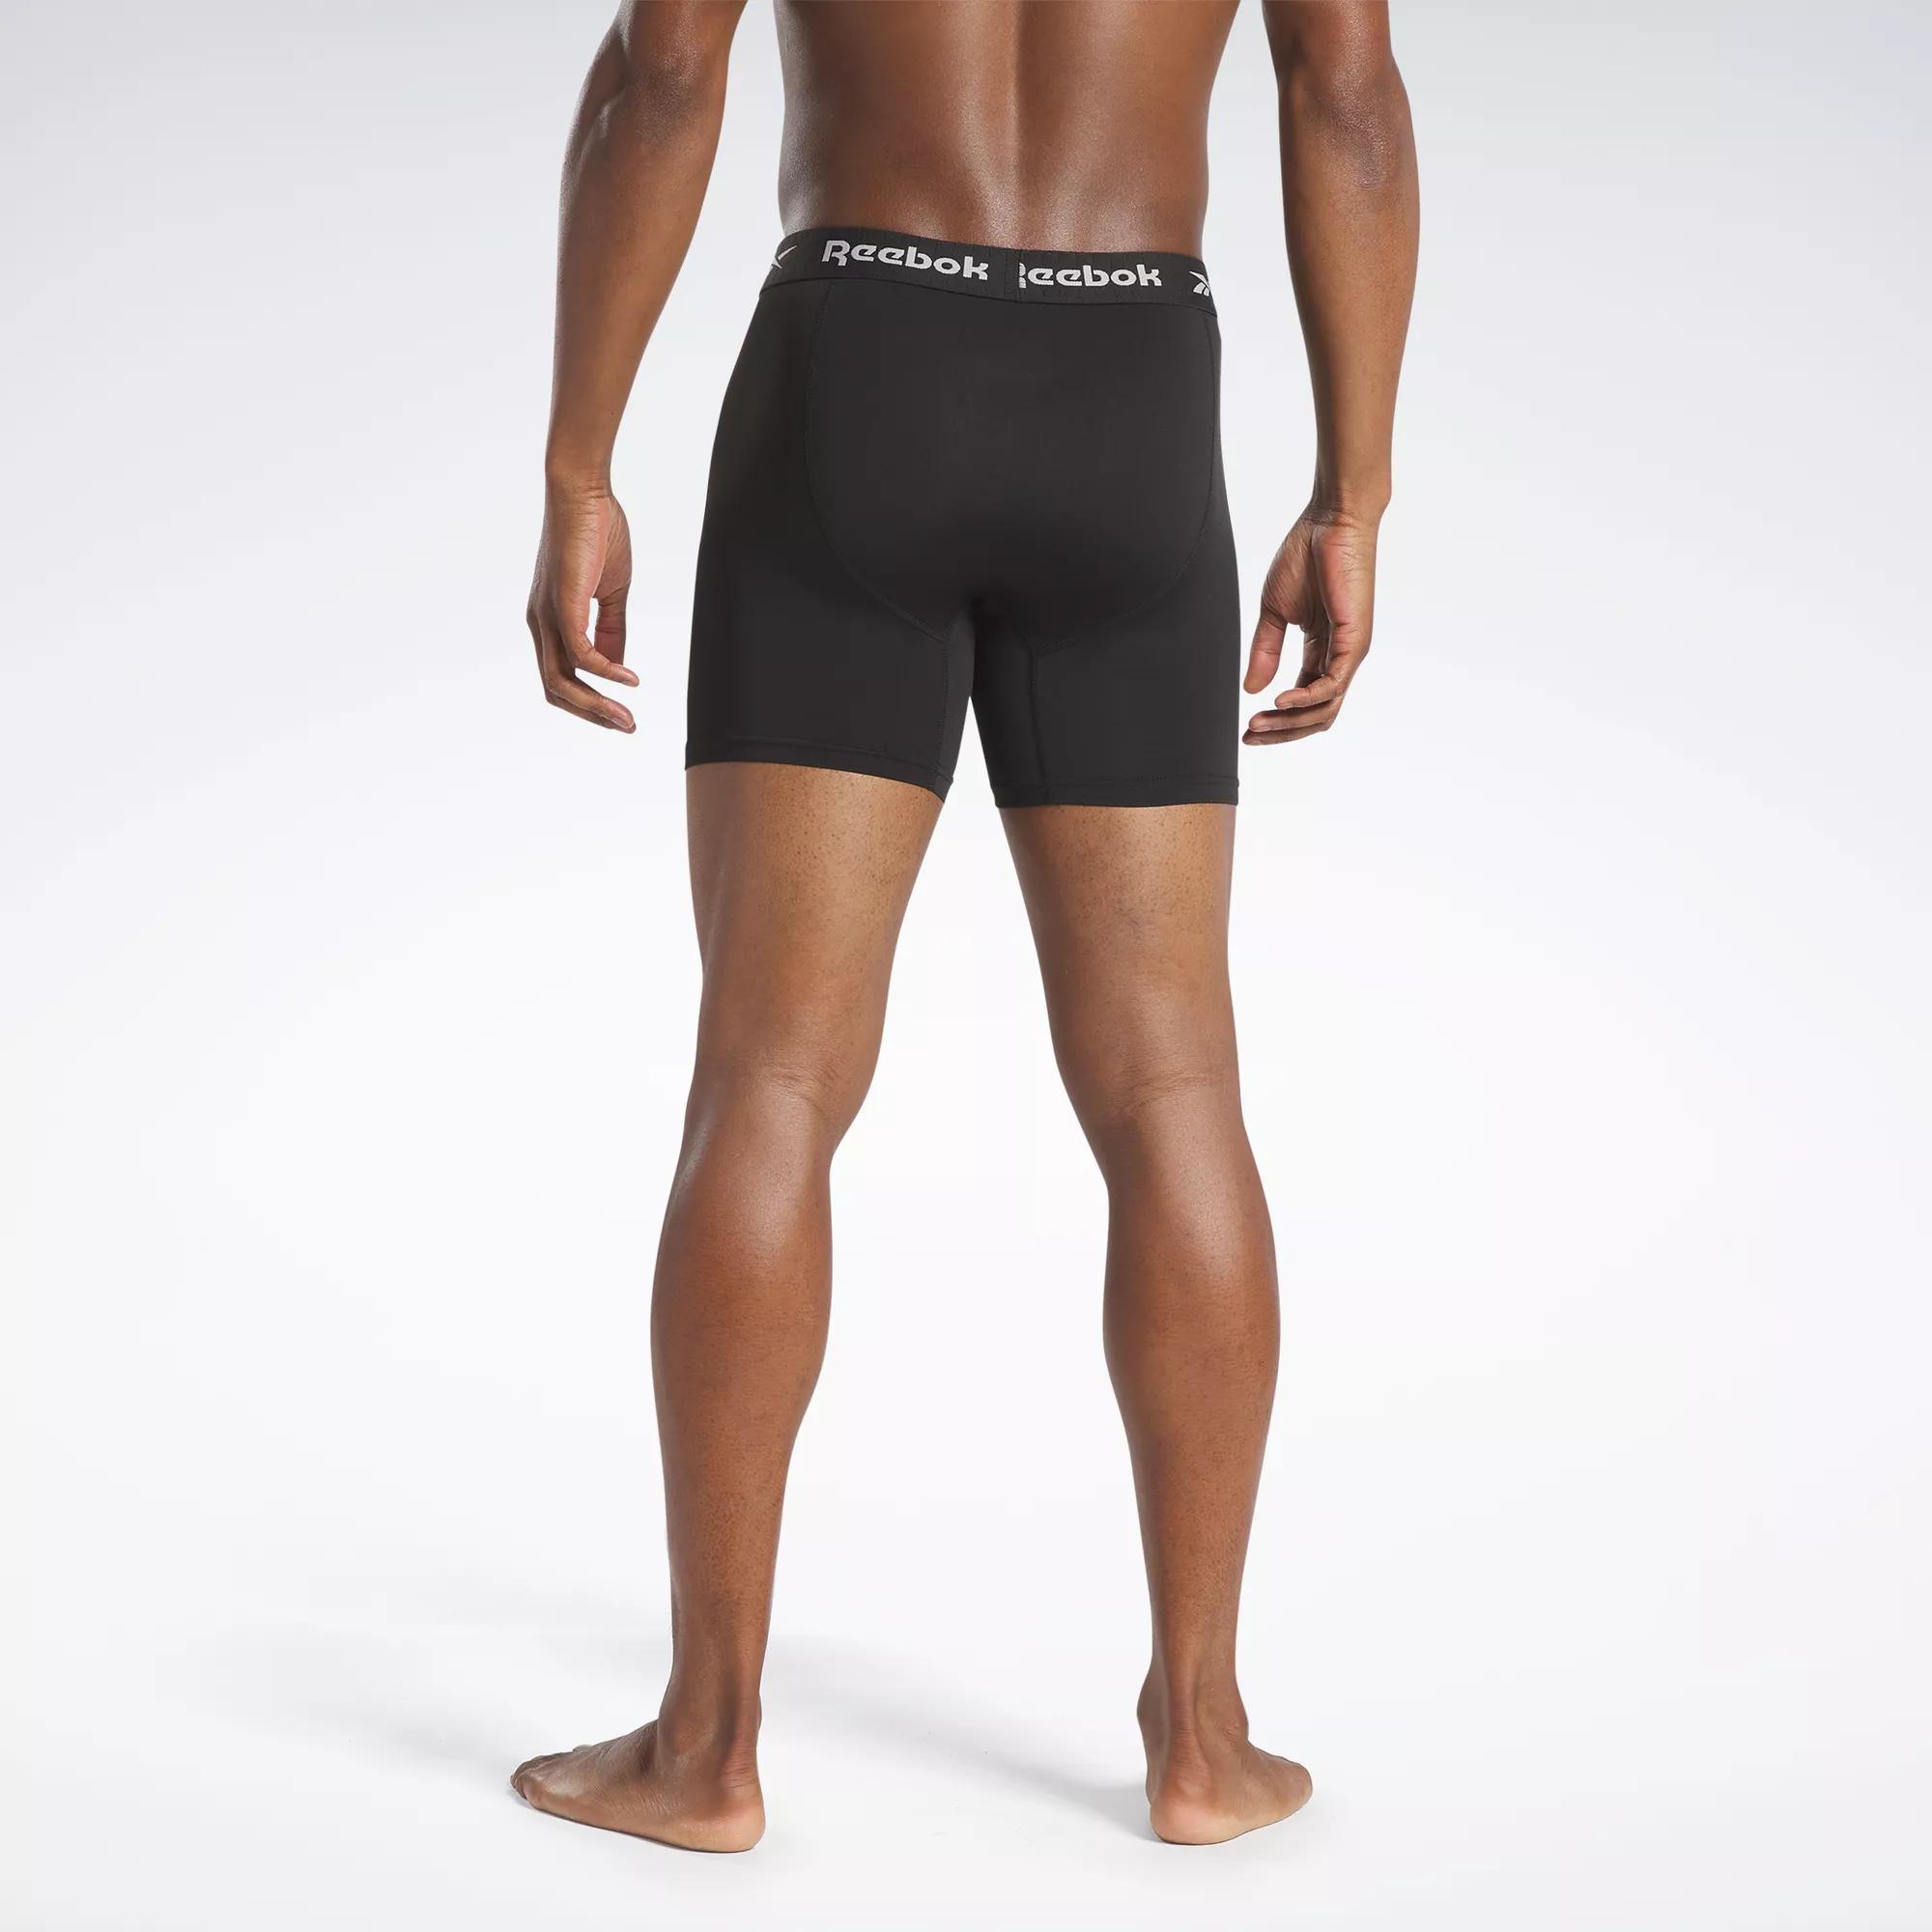 Reebok Women's Reebok Womens Sports Boy Briefs, Multi Pack of 3 Workout  Underwear in Black